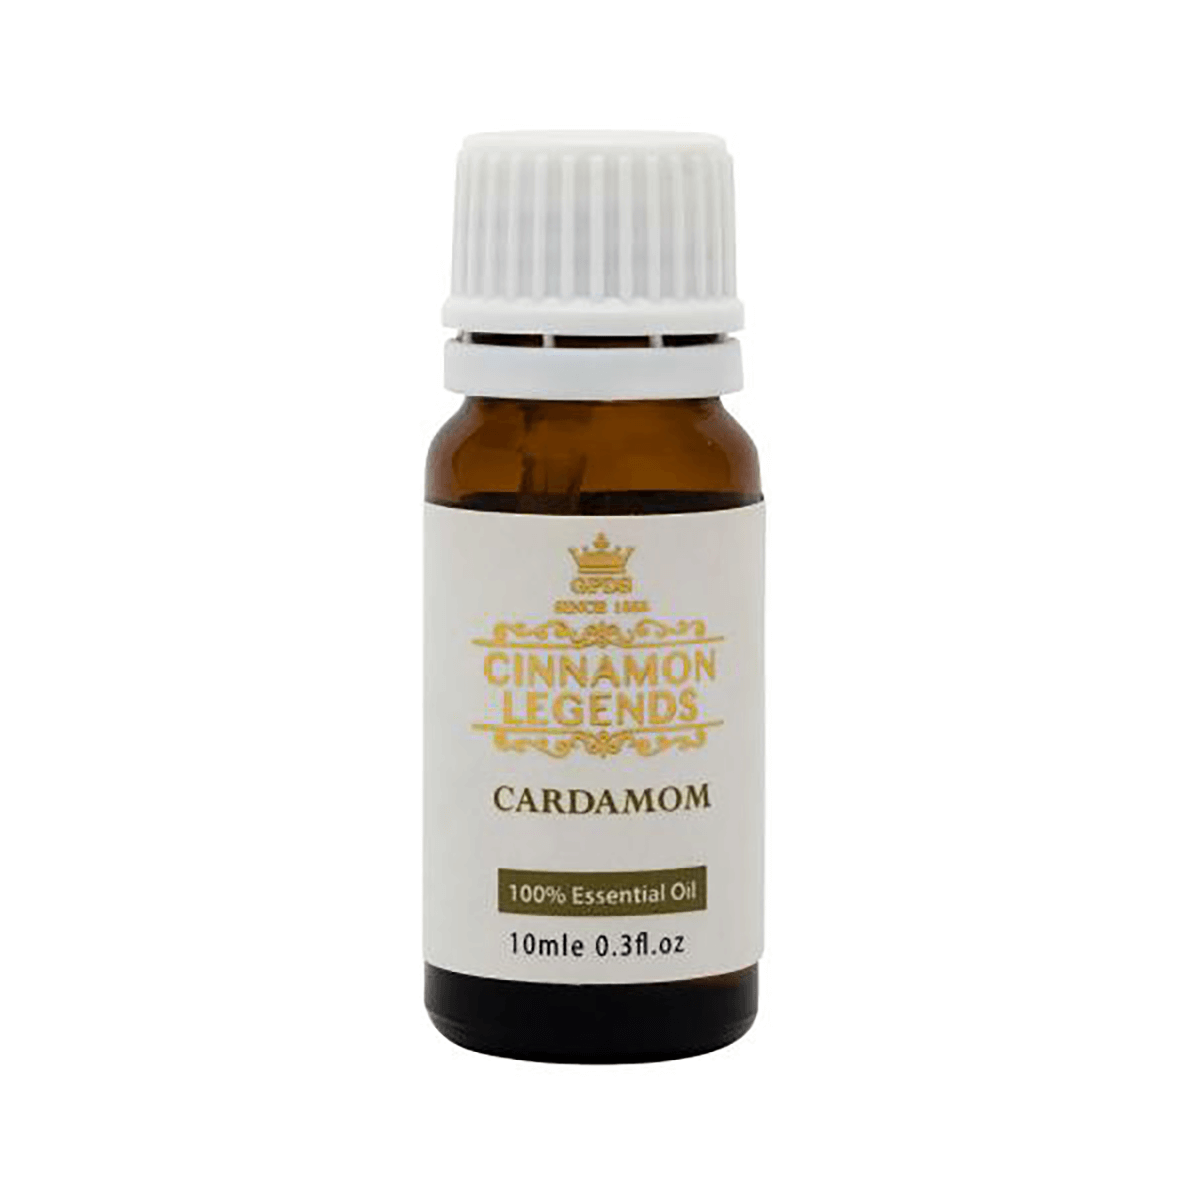 Cardamom oil – 10ml